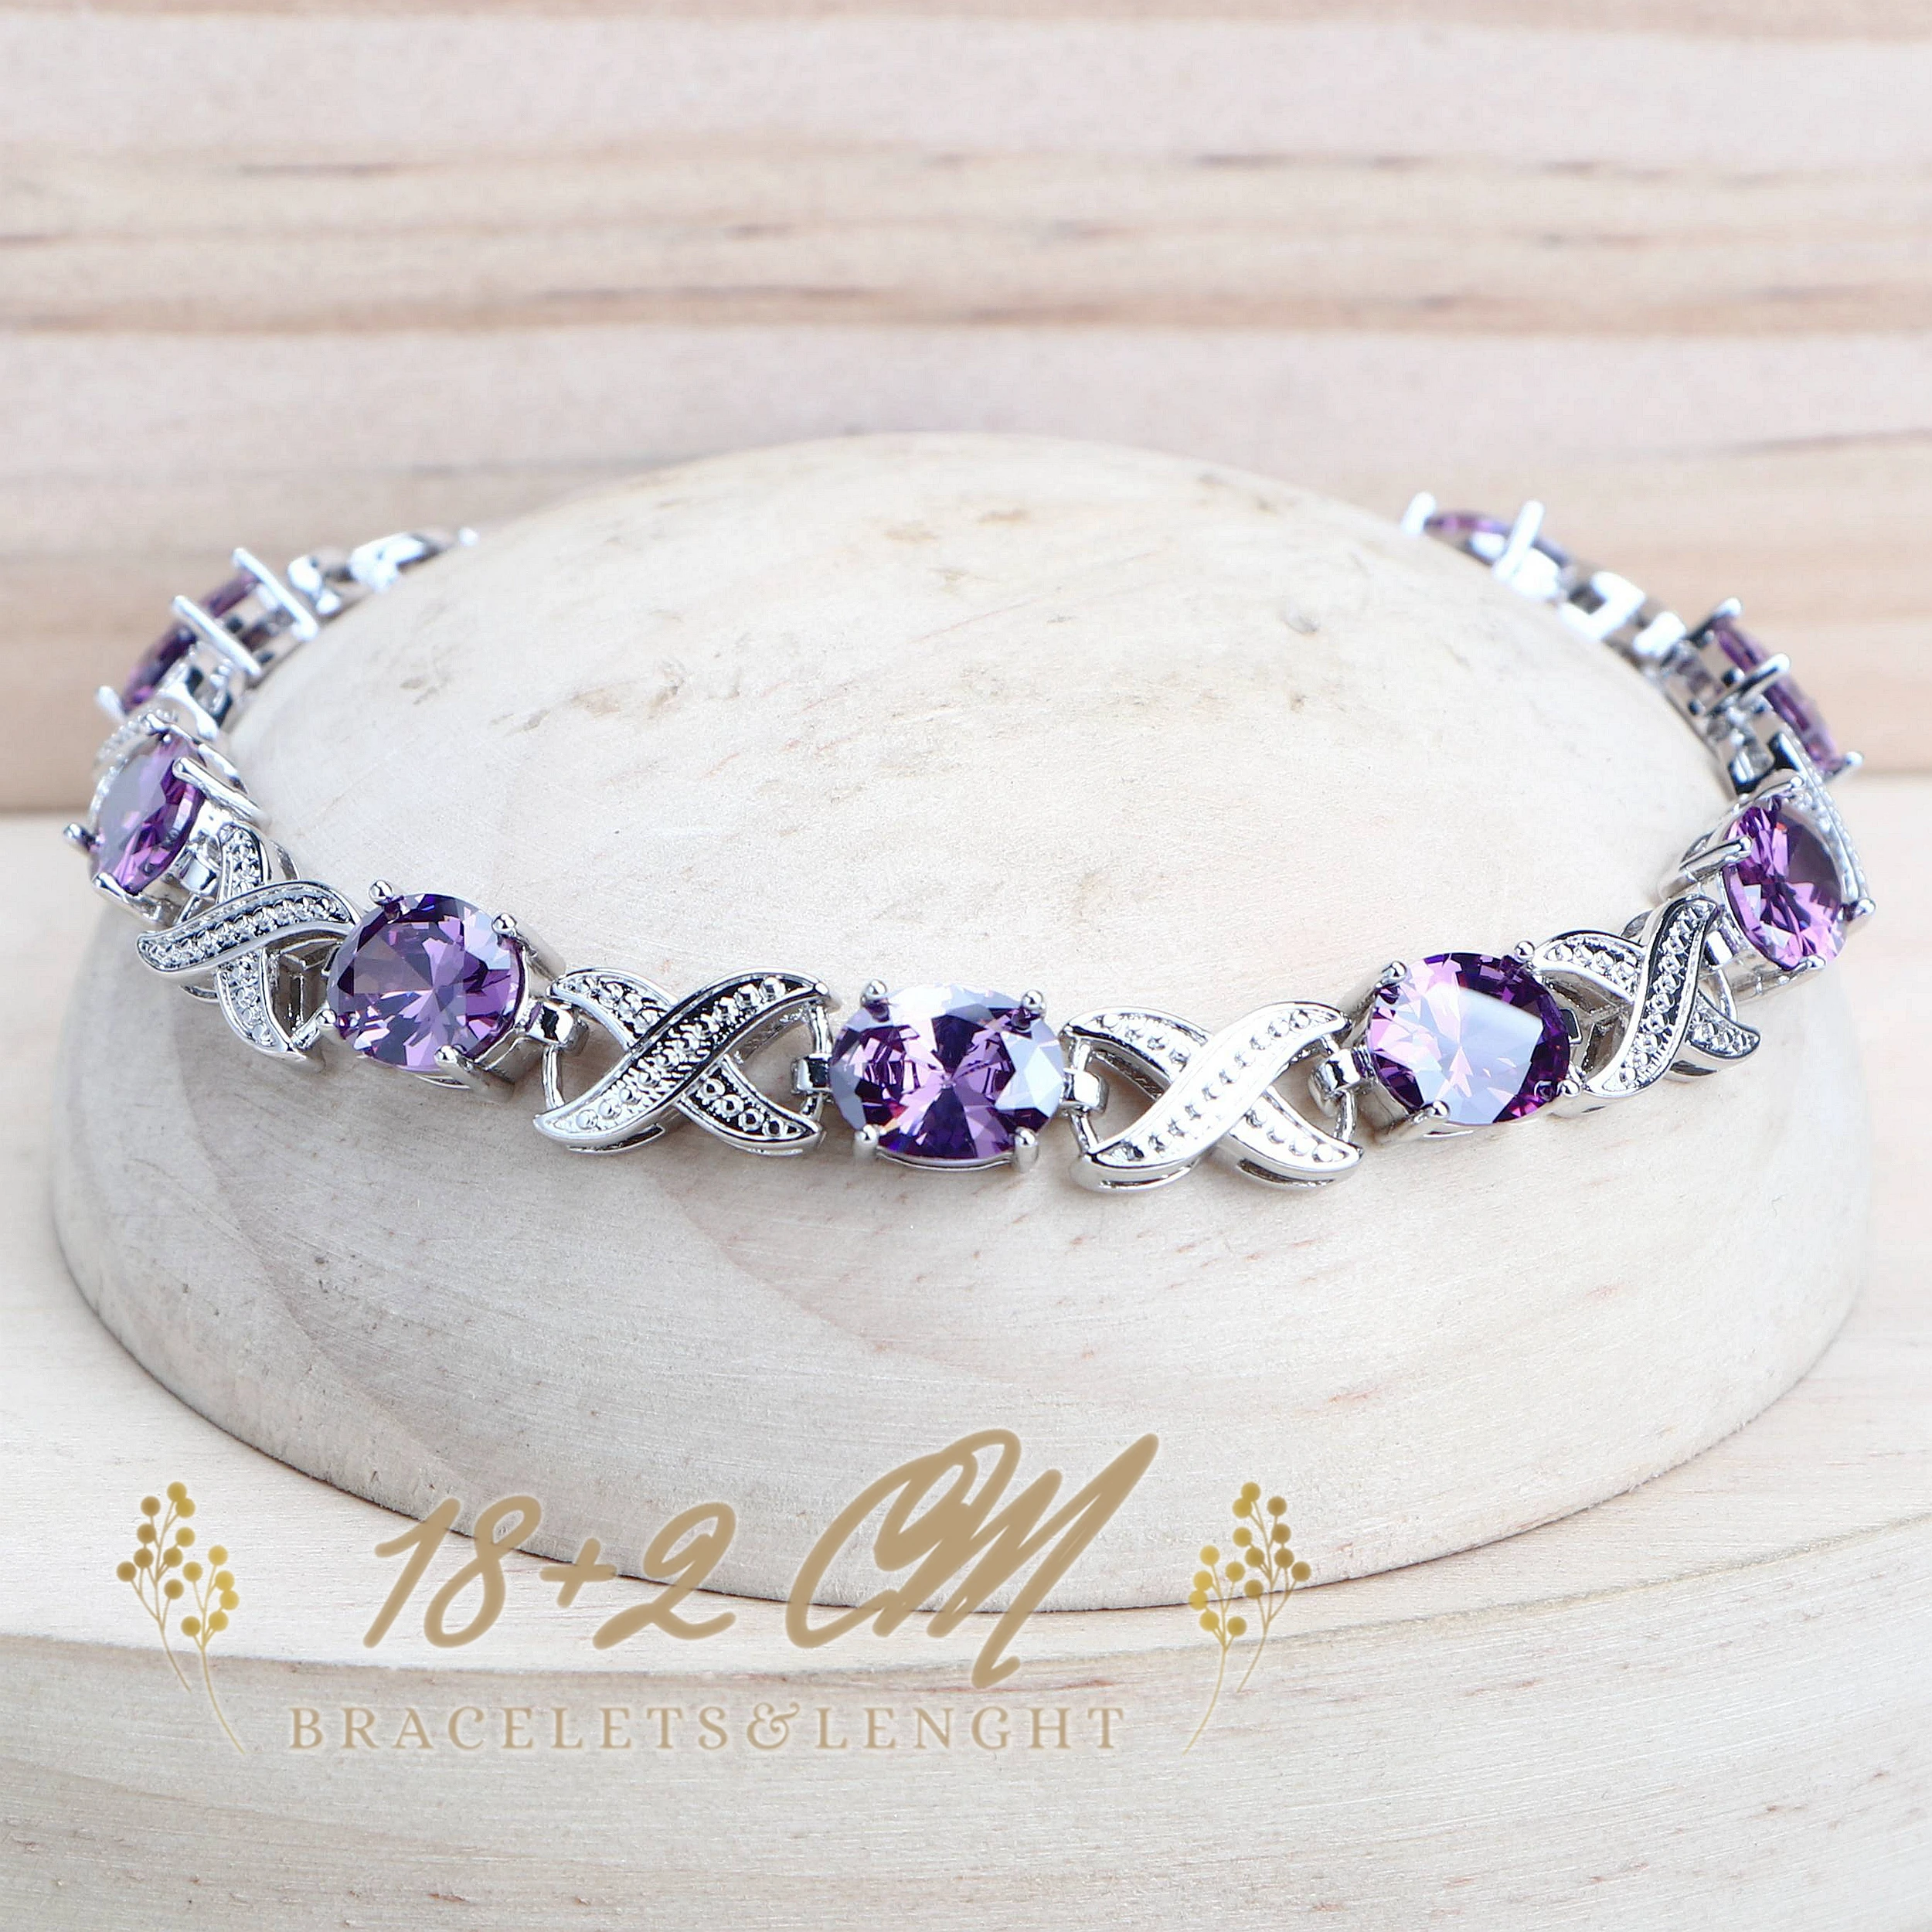 Purple Zirconia Women Bridal Jewelry Sets Silver 925 Fine Costume Jewellery Wedding Earrings Rings Bracelets Pendant Necklace